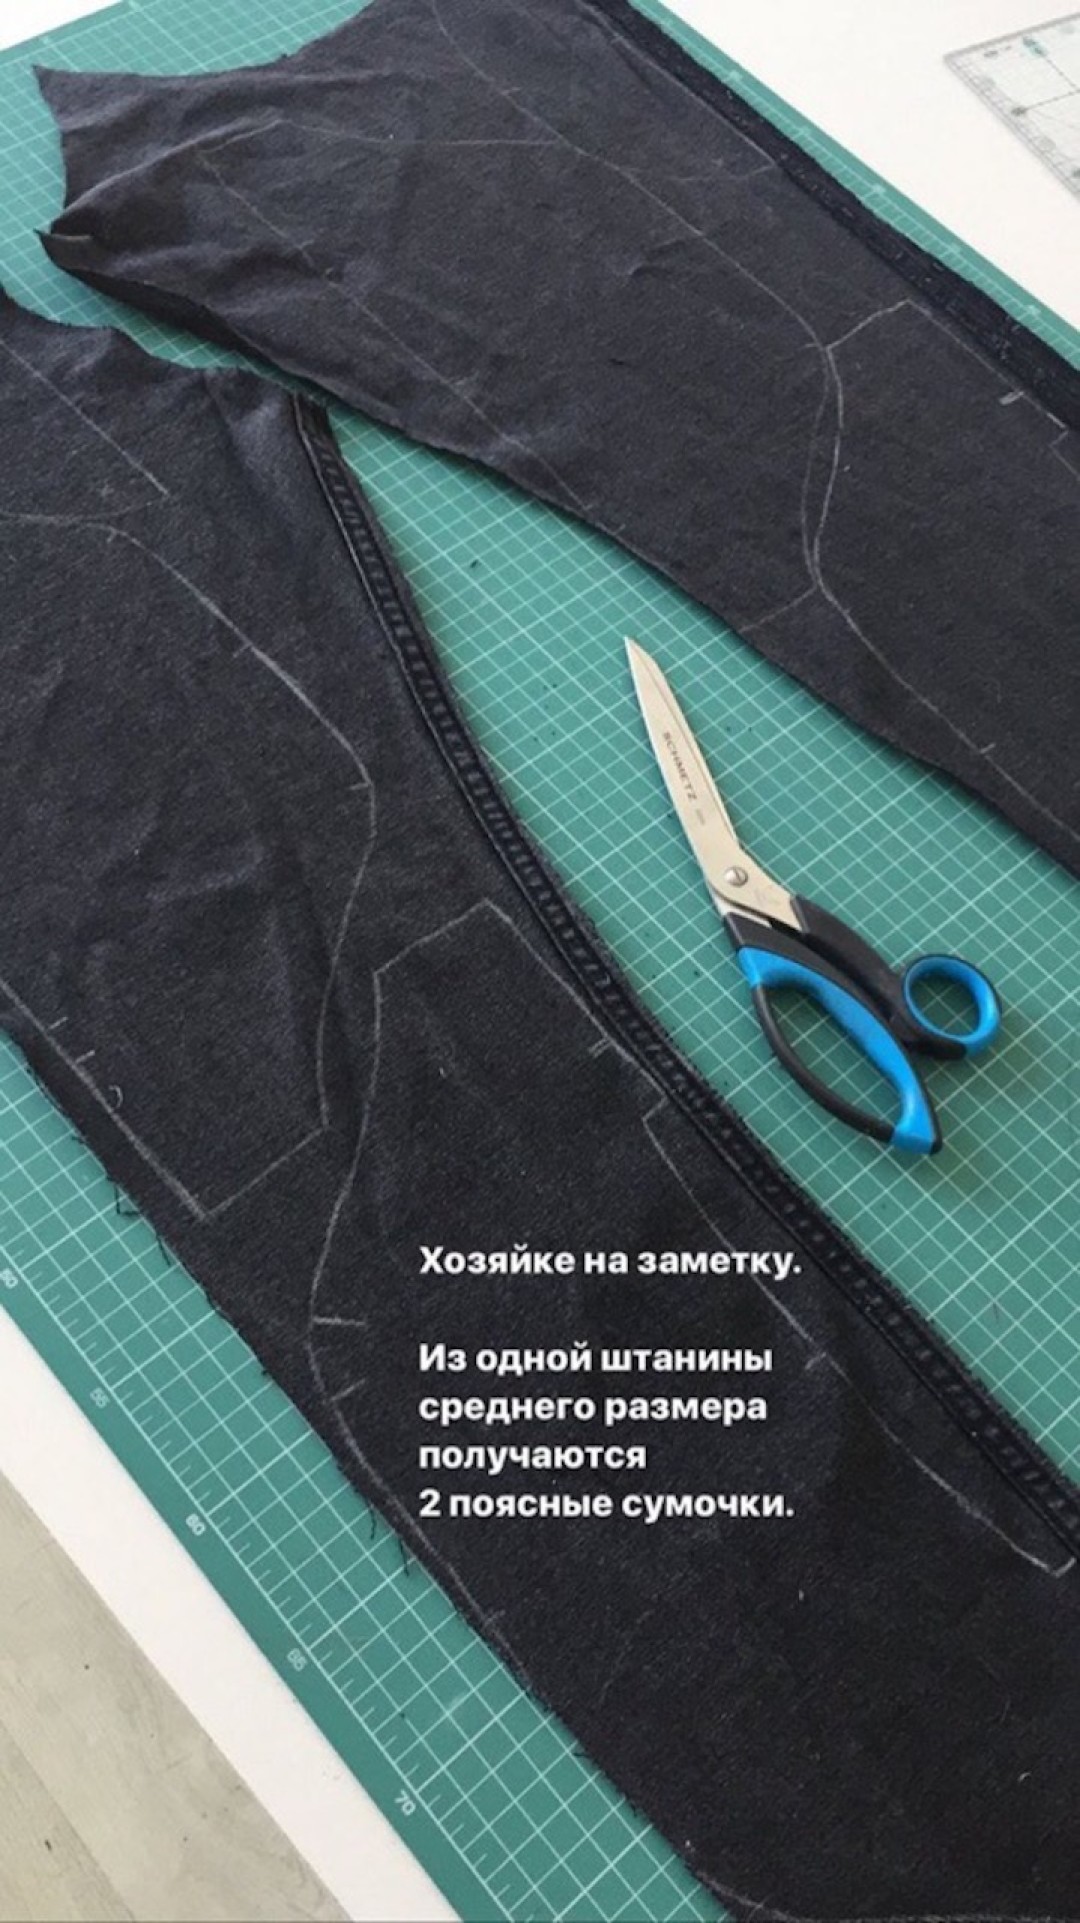 В Петербурге появился проект, который сделает сумку из вашей старой одежды (фото 1)